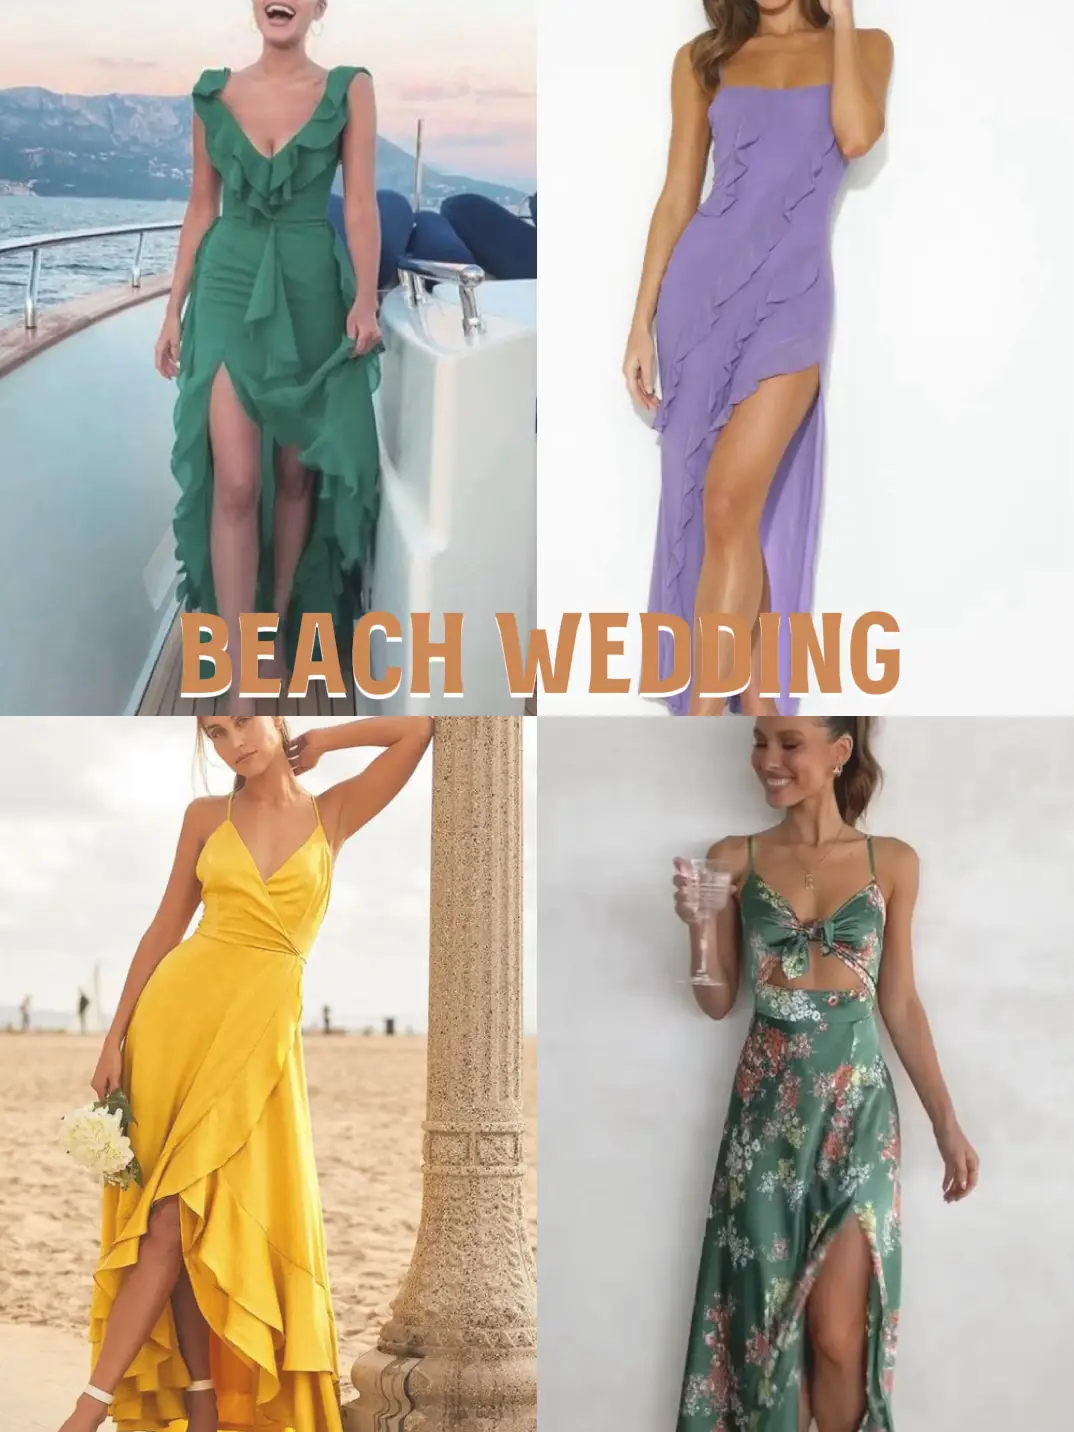 Dallas Cowboys Women's Beach Sundress Slip Dress Summer Casual